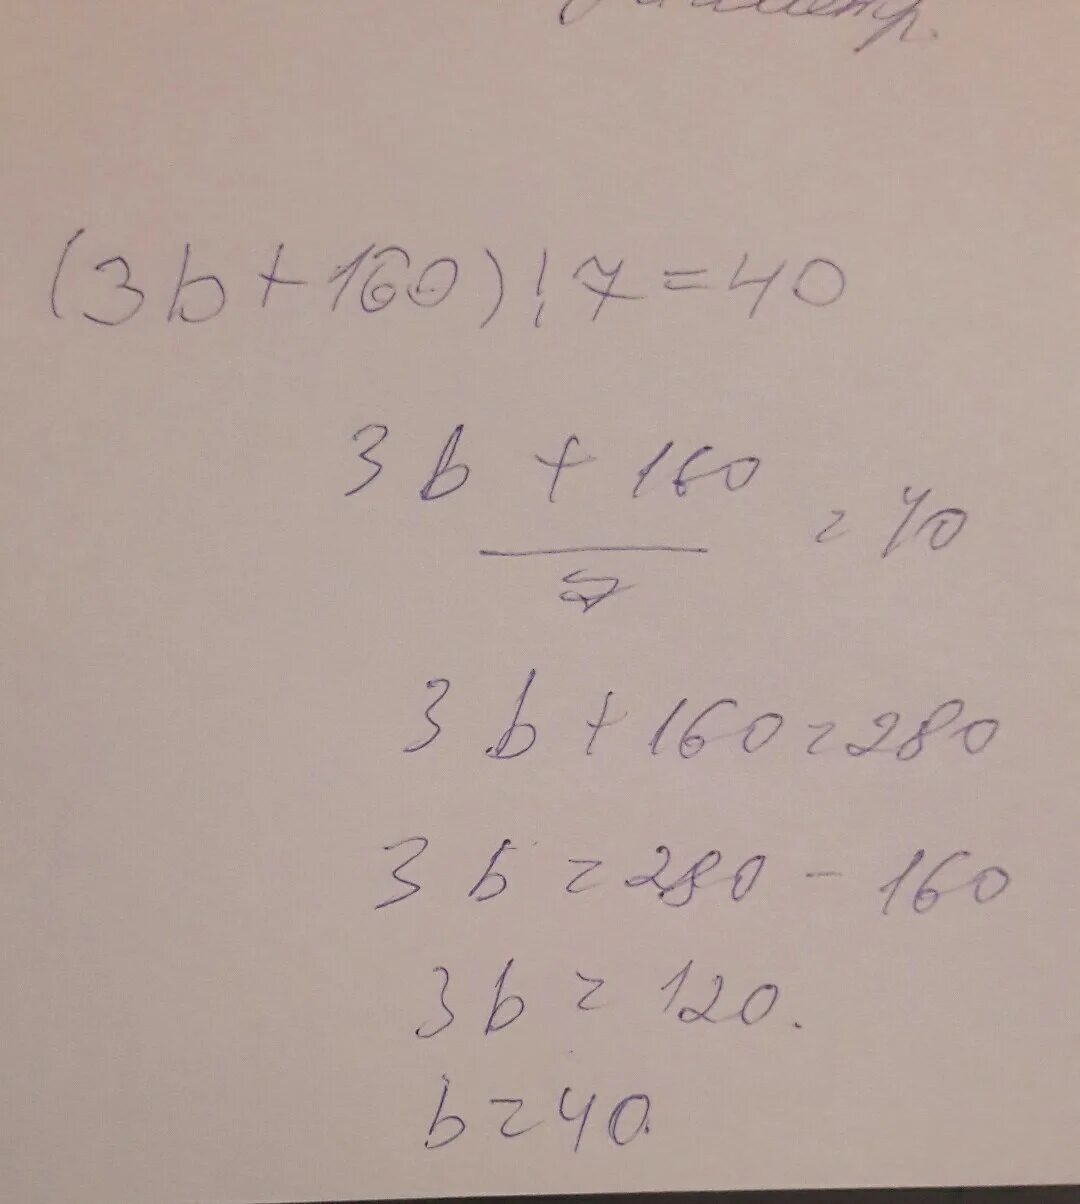 40 7 ответ. (3*B+160):7=40. 40:X=120 ответ. 3× Z+160÷7=40. Acheshos7.40.